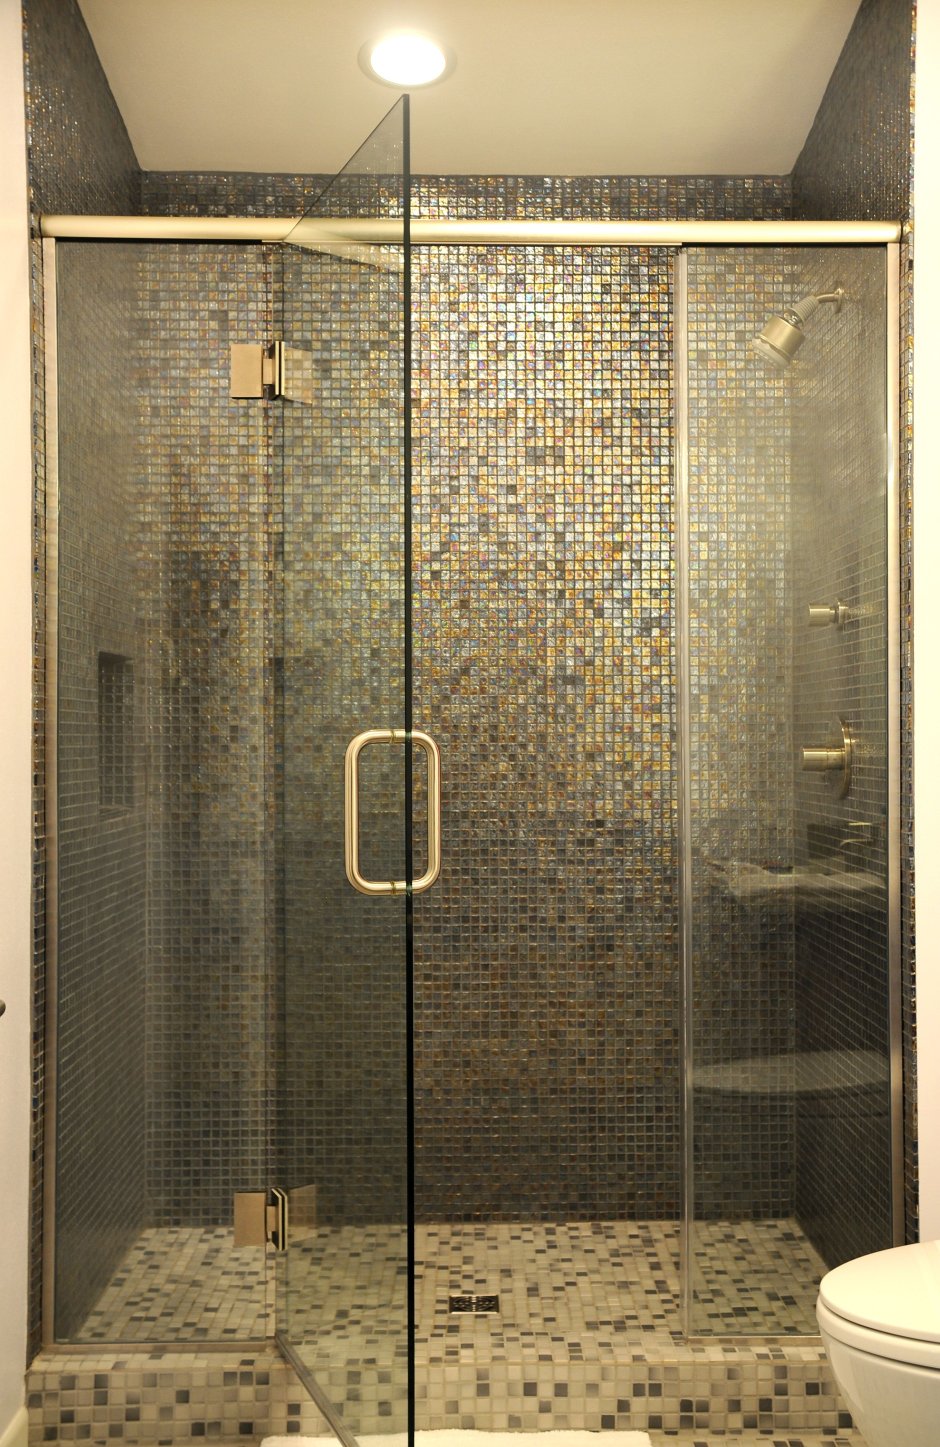 Ванная комната с душевой из плитки